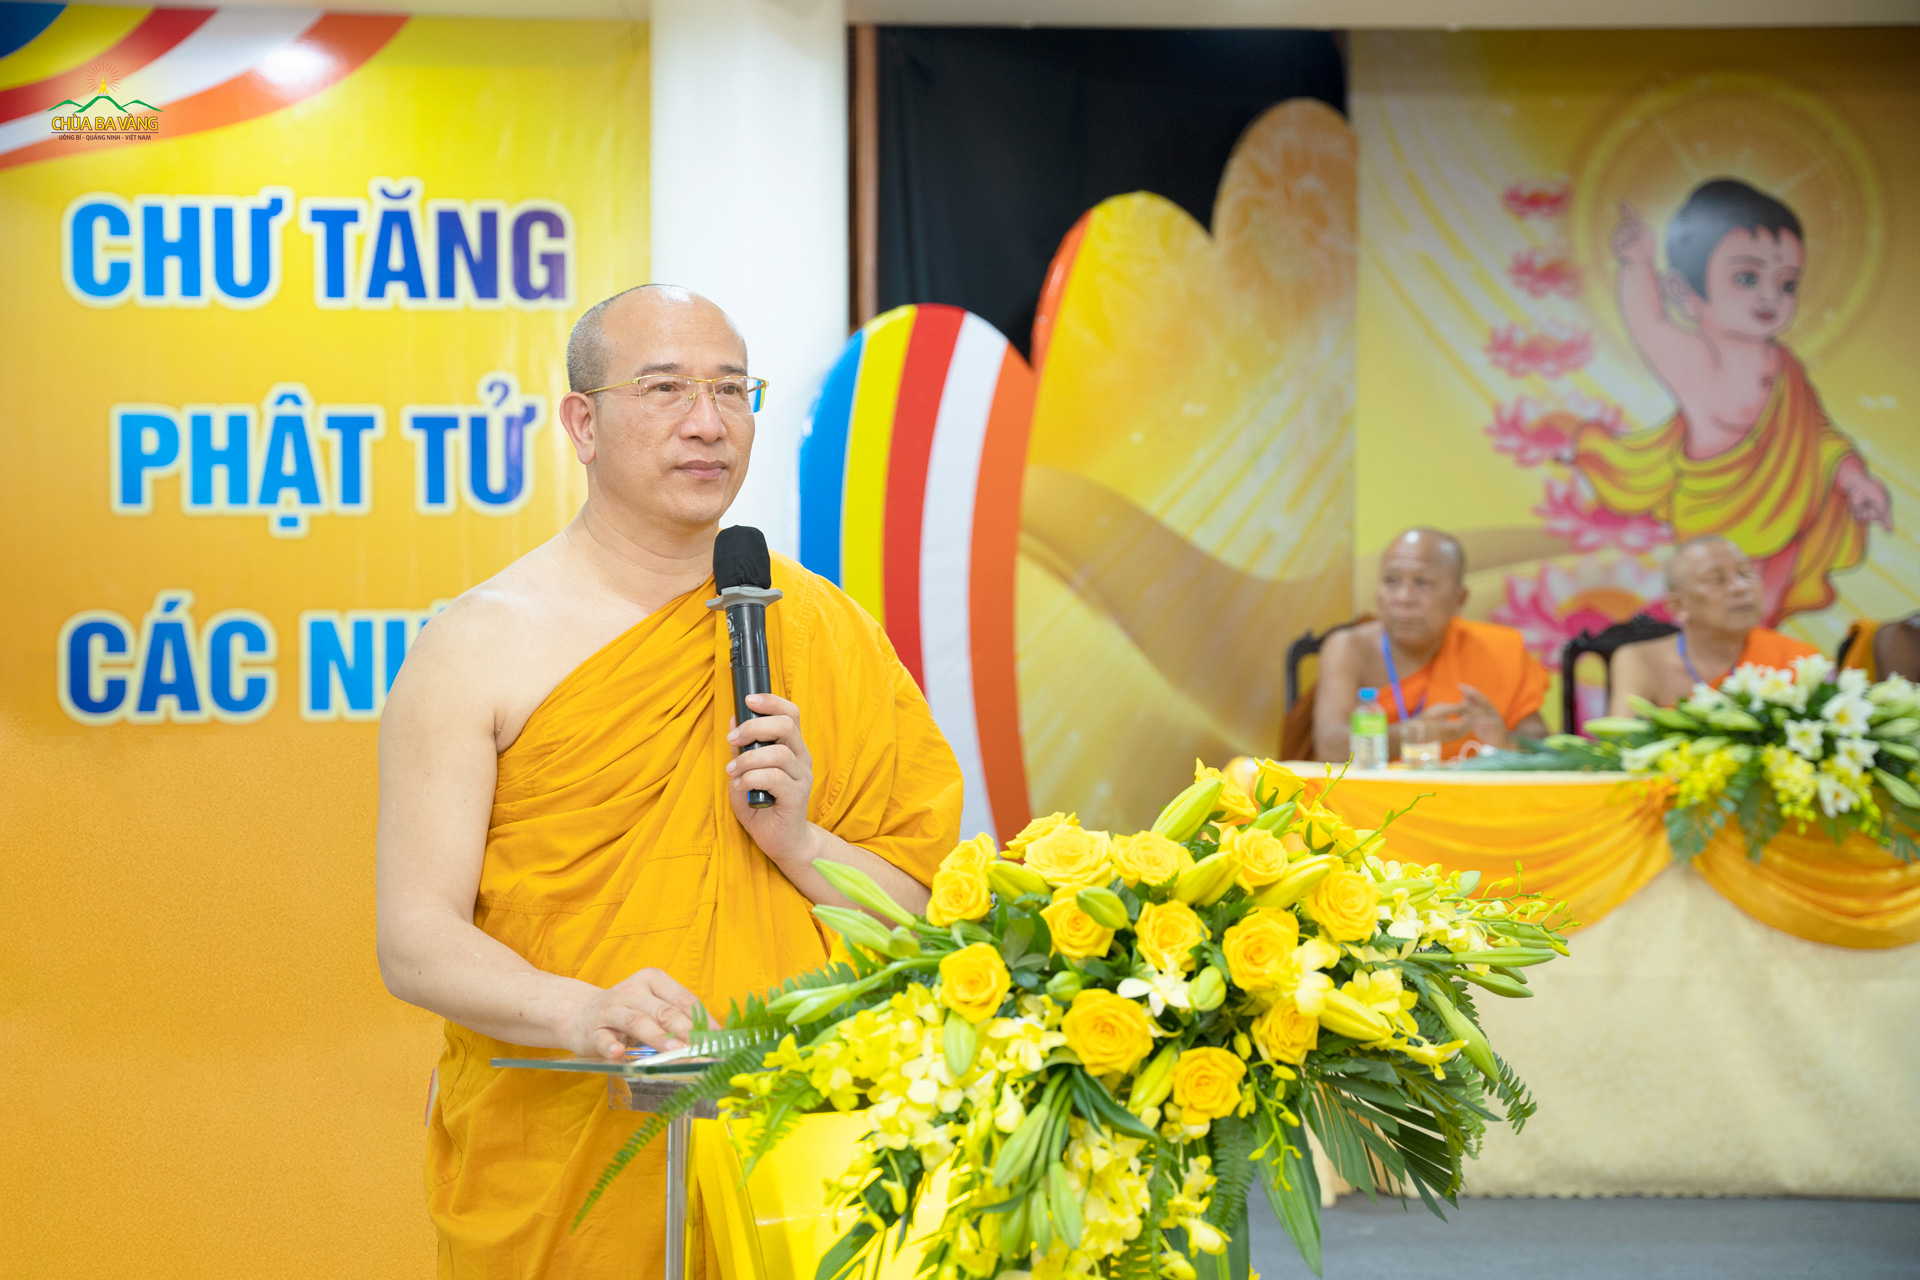 Thầy Thích Trúc Thái Minh bày tỏ niềm hạnh phúc khi chùa Ba Vàng được đón nhận những phần quà của chư Tôn đức Tăng từ các nước gửi tặng